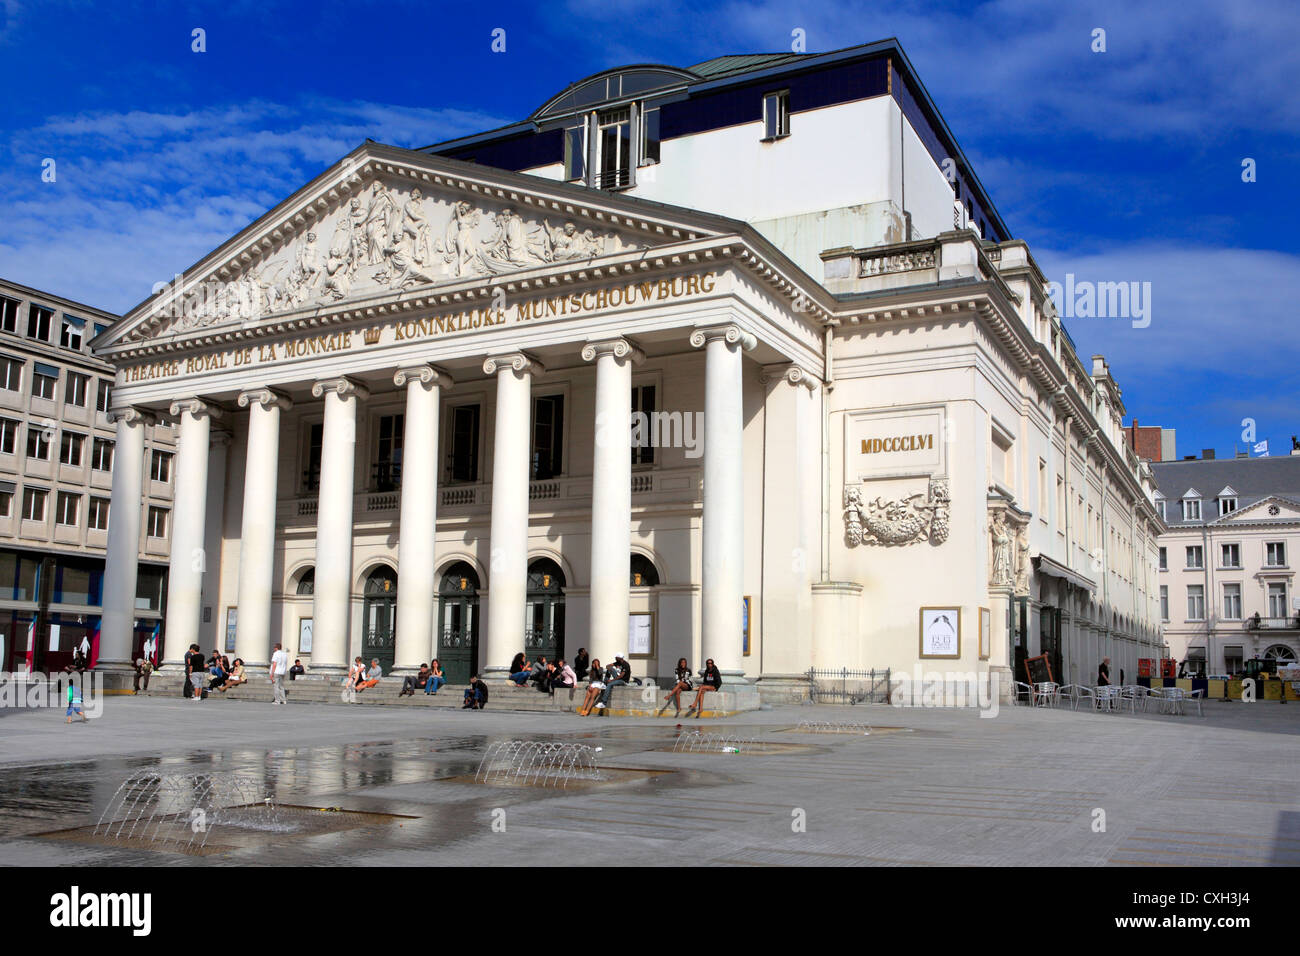 Le Theatre Royal de la Monnaie (1856), Brussels, Belgium Stock Photo